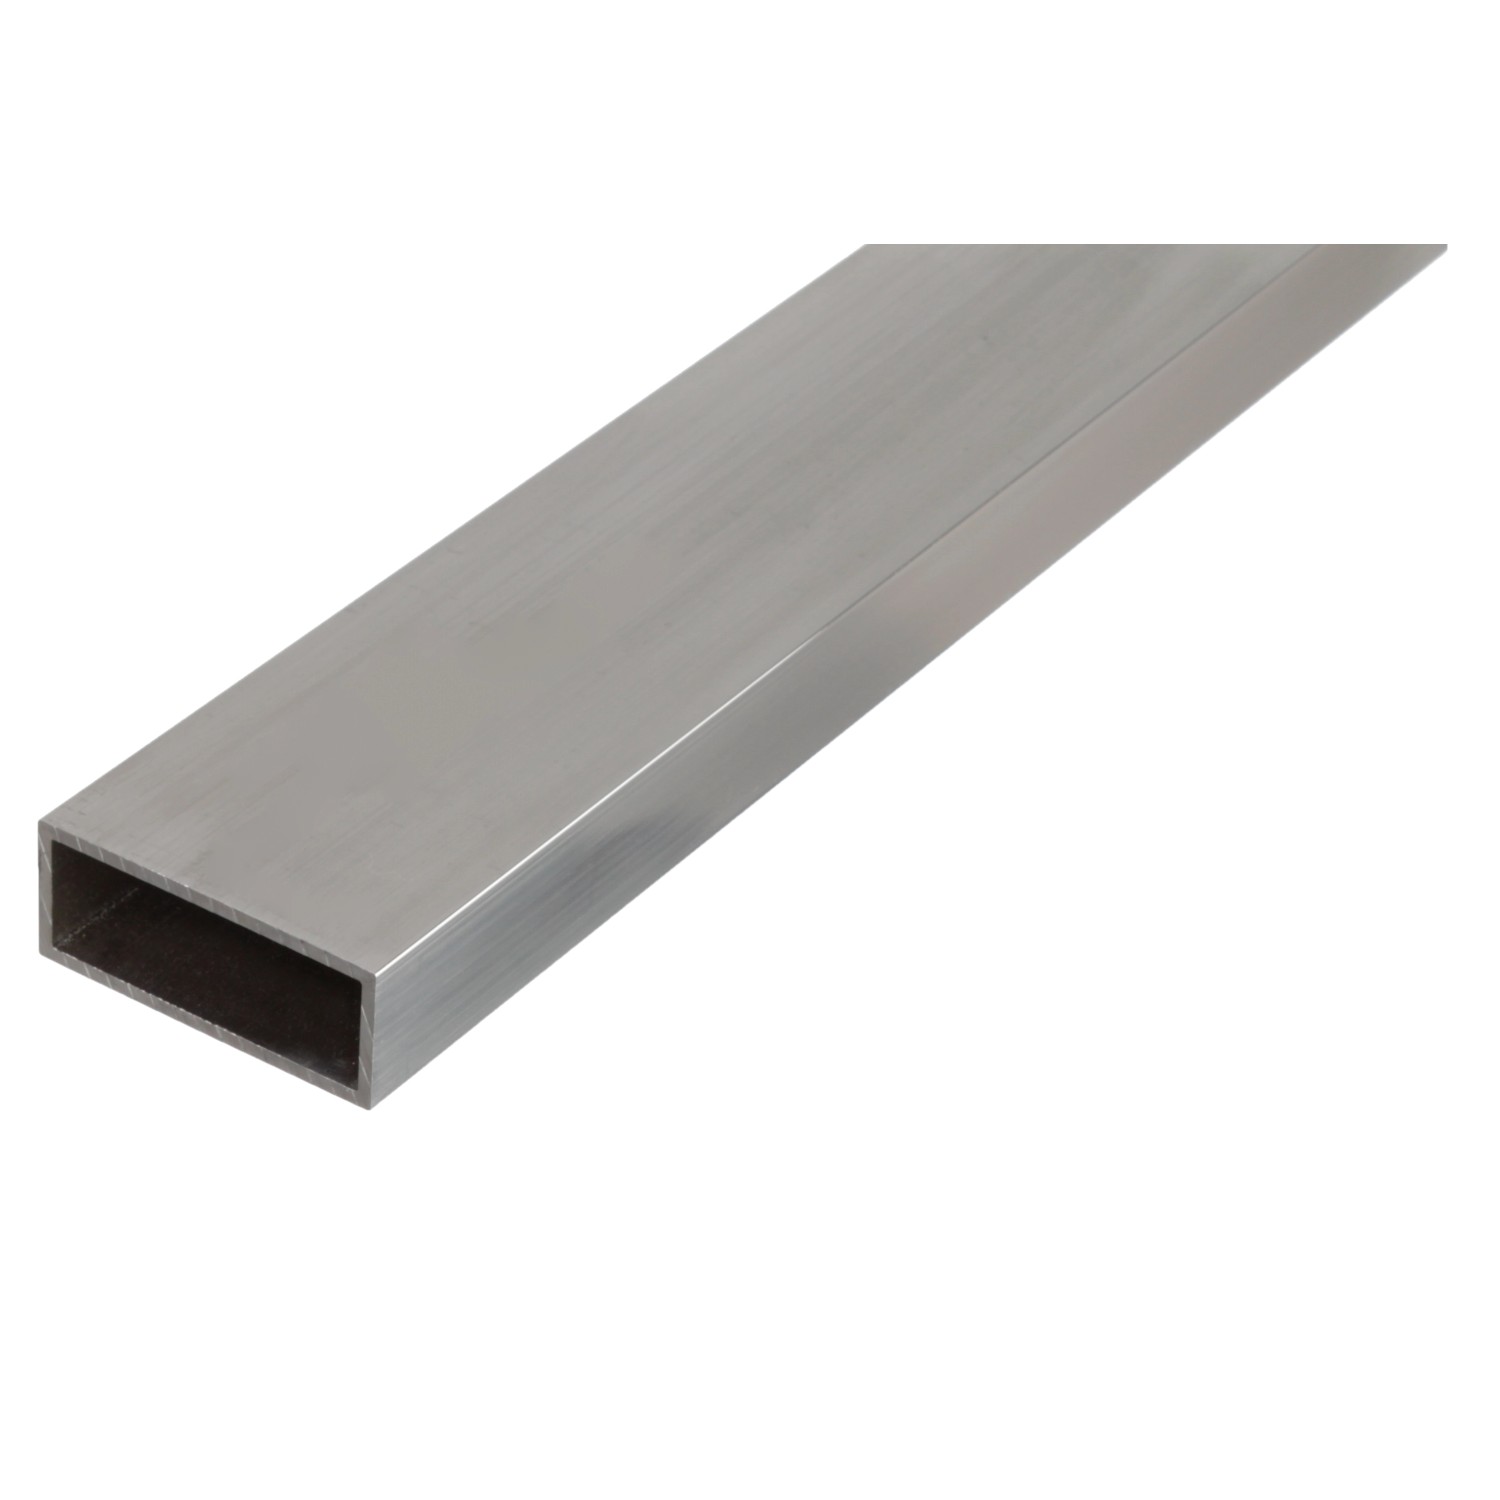 Rechteckrohr Silber eloxiert 20 mm x 50 mm x 1000 mm kaufen bei OBI